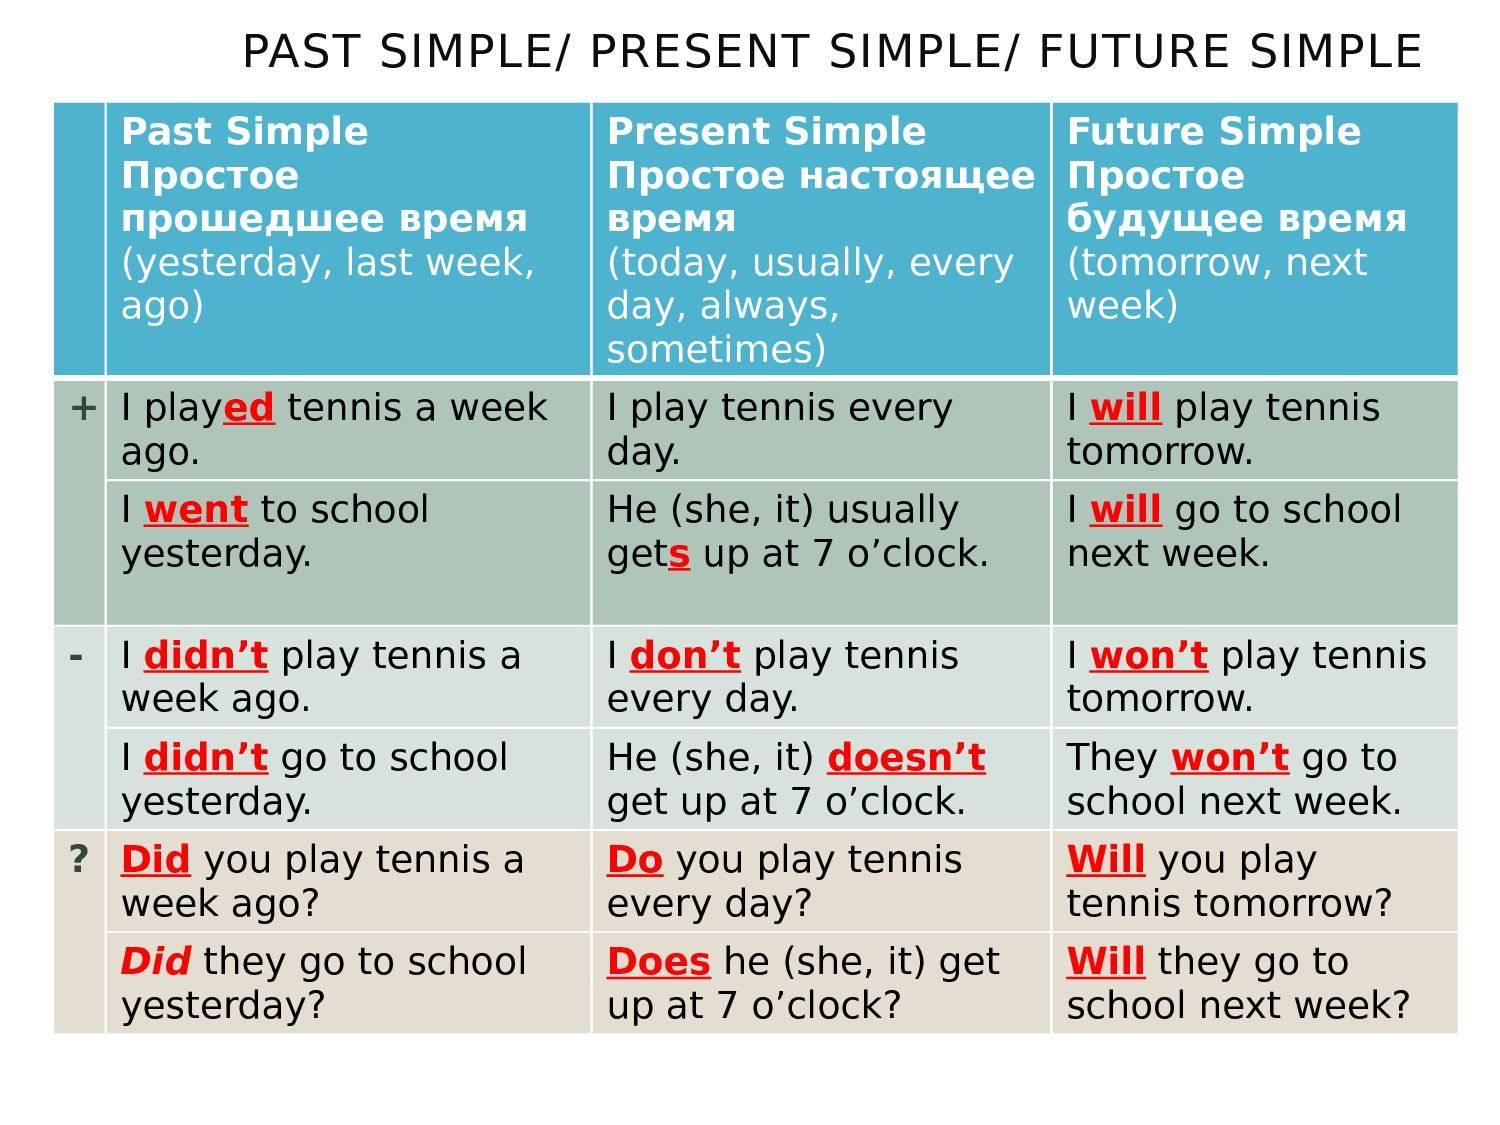 Предложения простое будущее время. Present simple past simple. Презент паст и Фьюче Симпл. Паст симпе и презен Симпле. Present simple past simple Future simple.